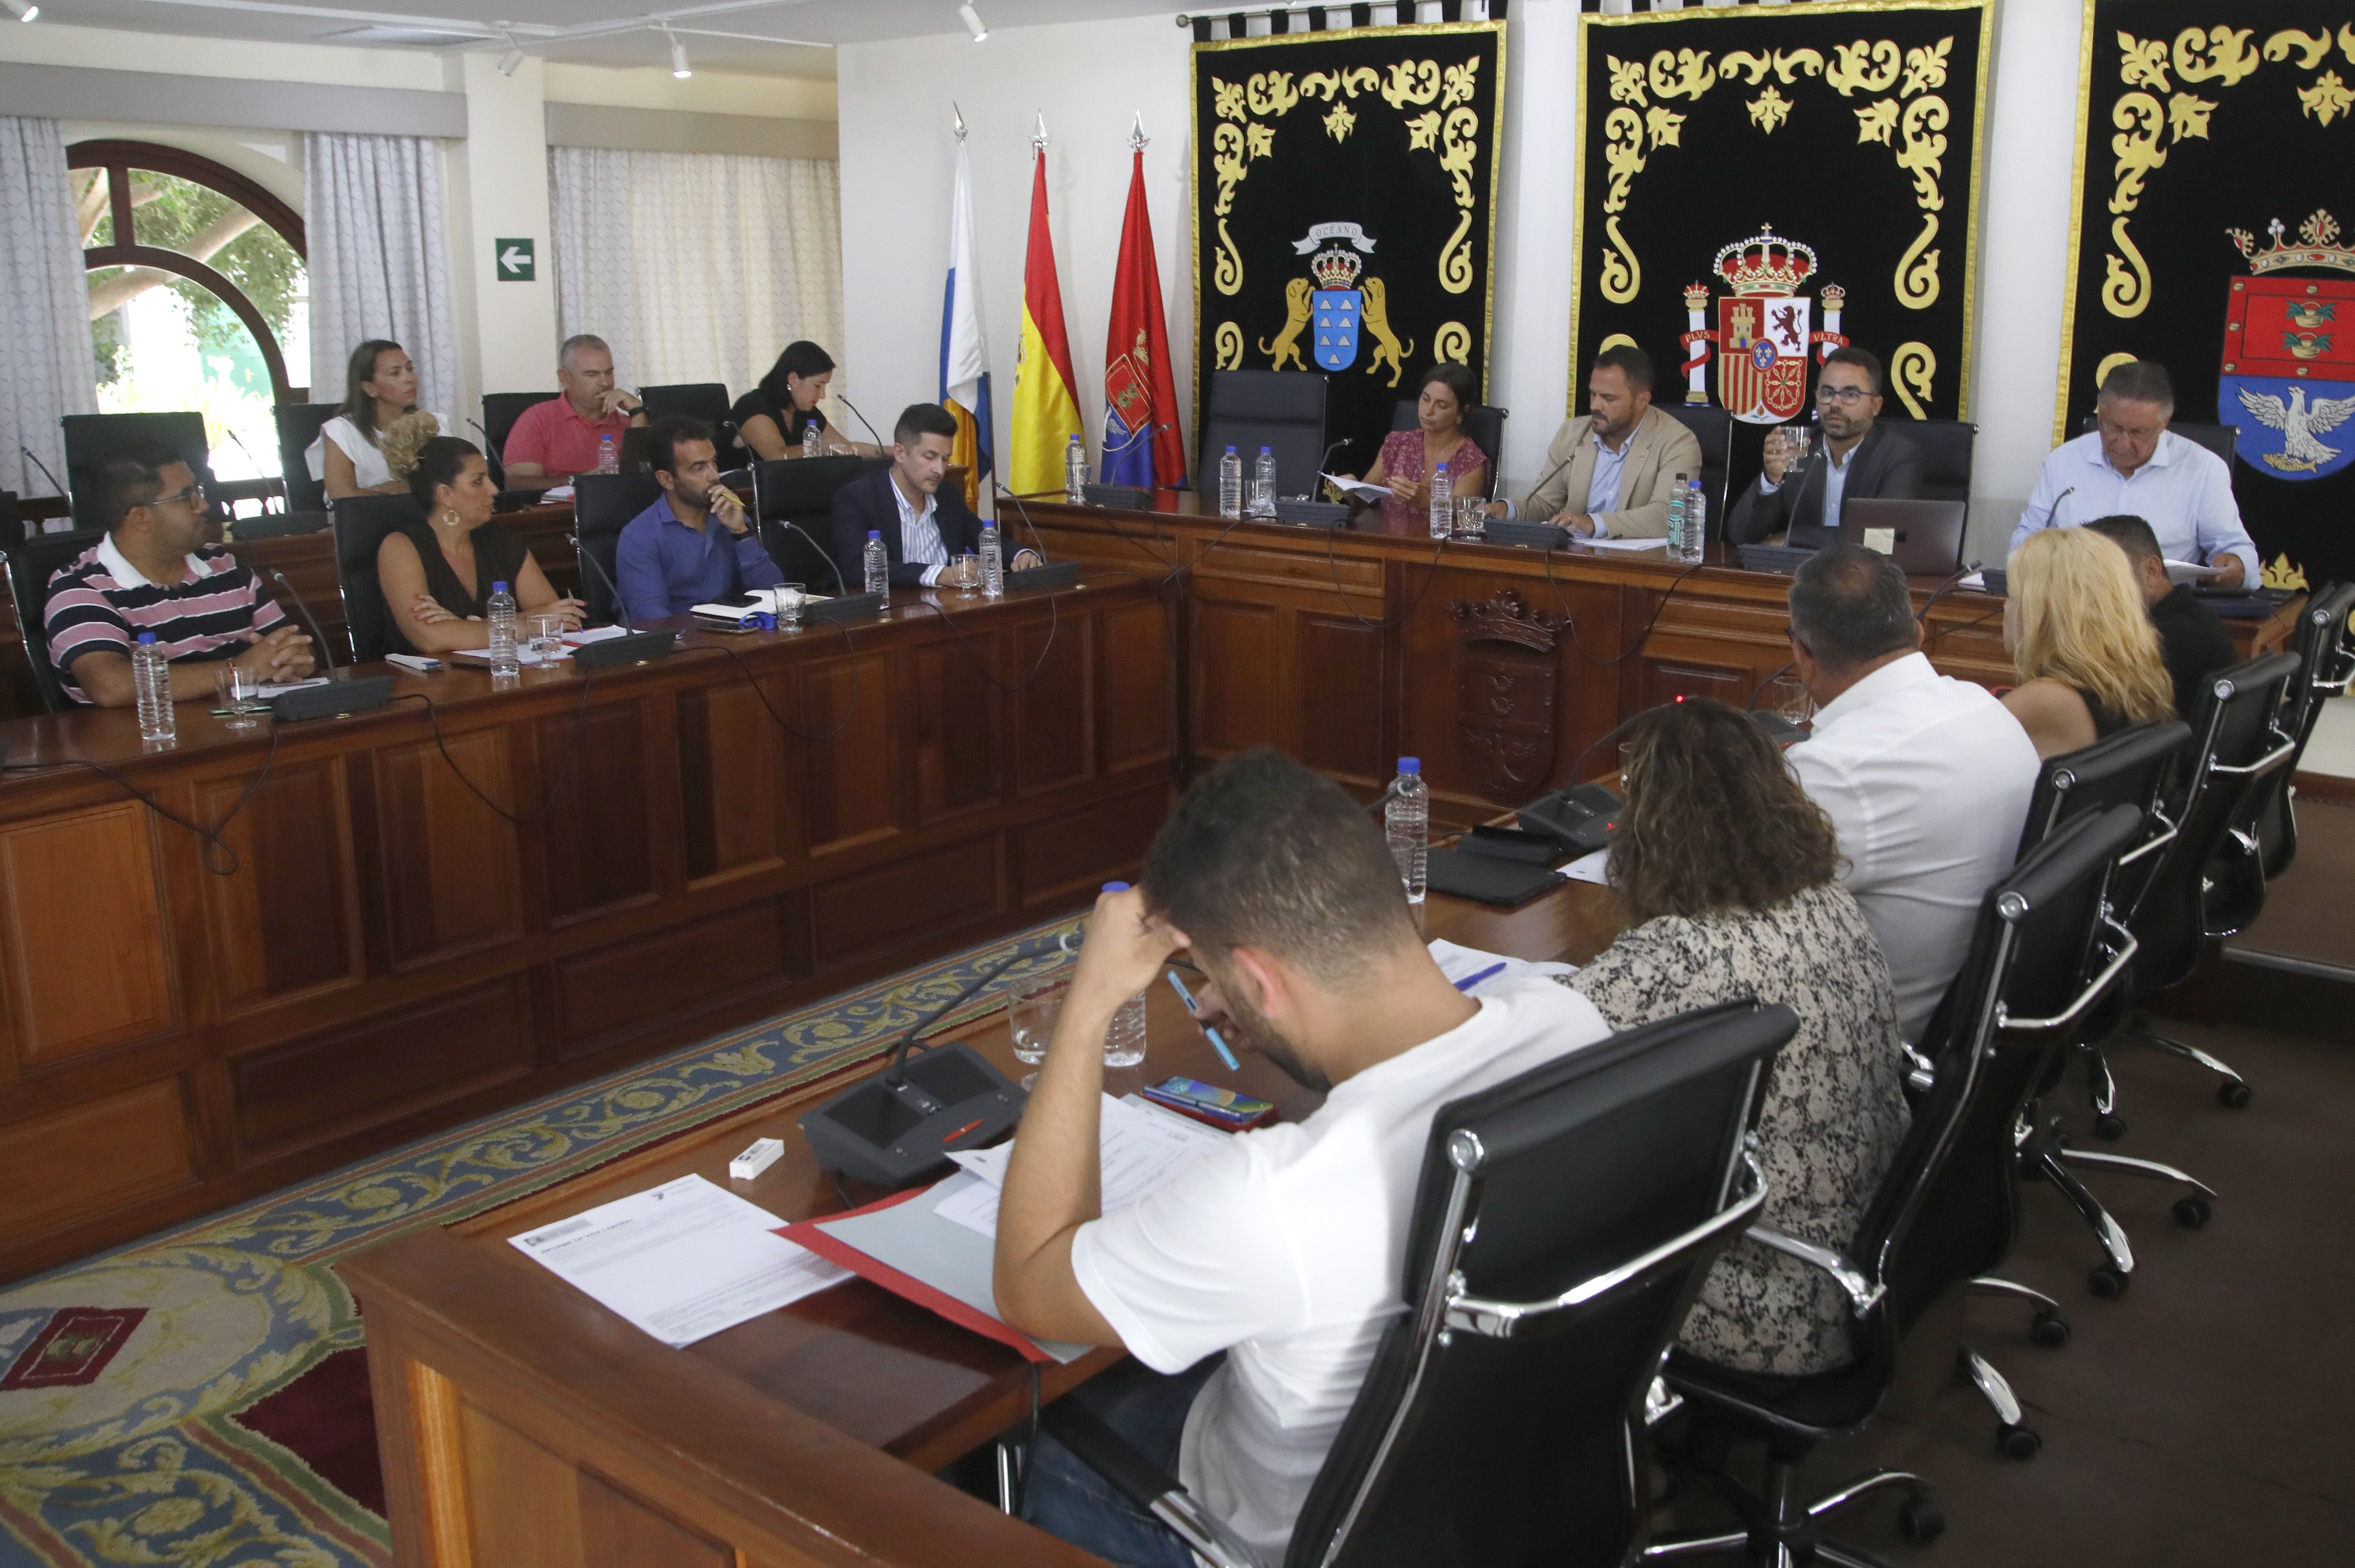 Pleno del Ayuntamiento de Arrecife el pasado lunes 11 de septiembre. Foto: José Luis Carrasco.